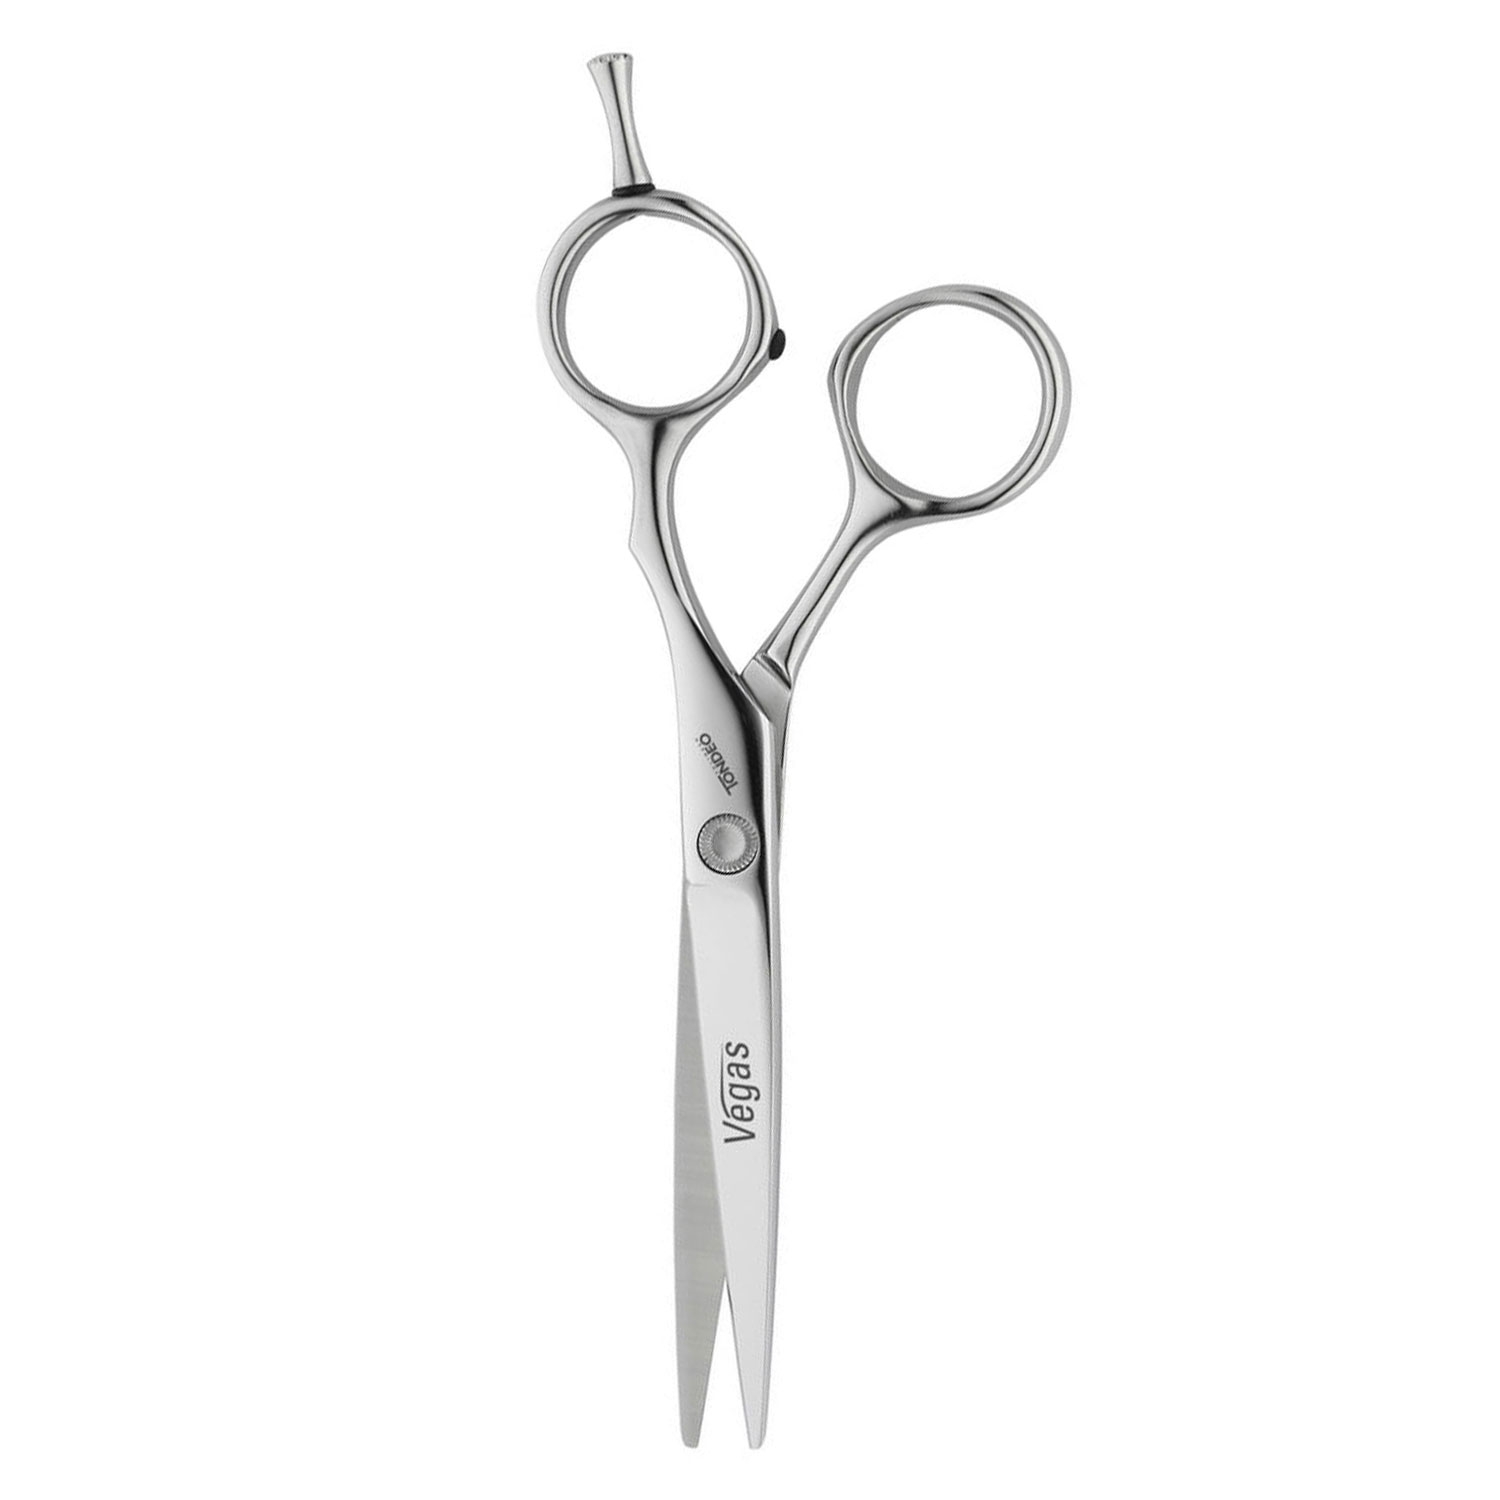 Produktbild von Tondeo Scissors - Vegas Offset Slice Scissors 5.0"